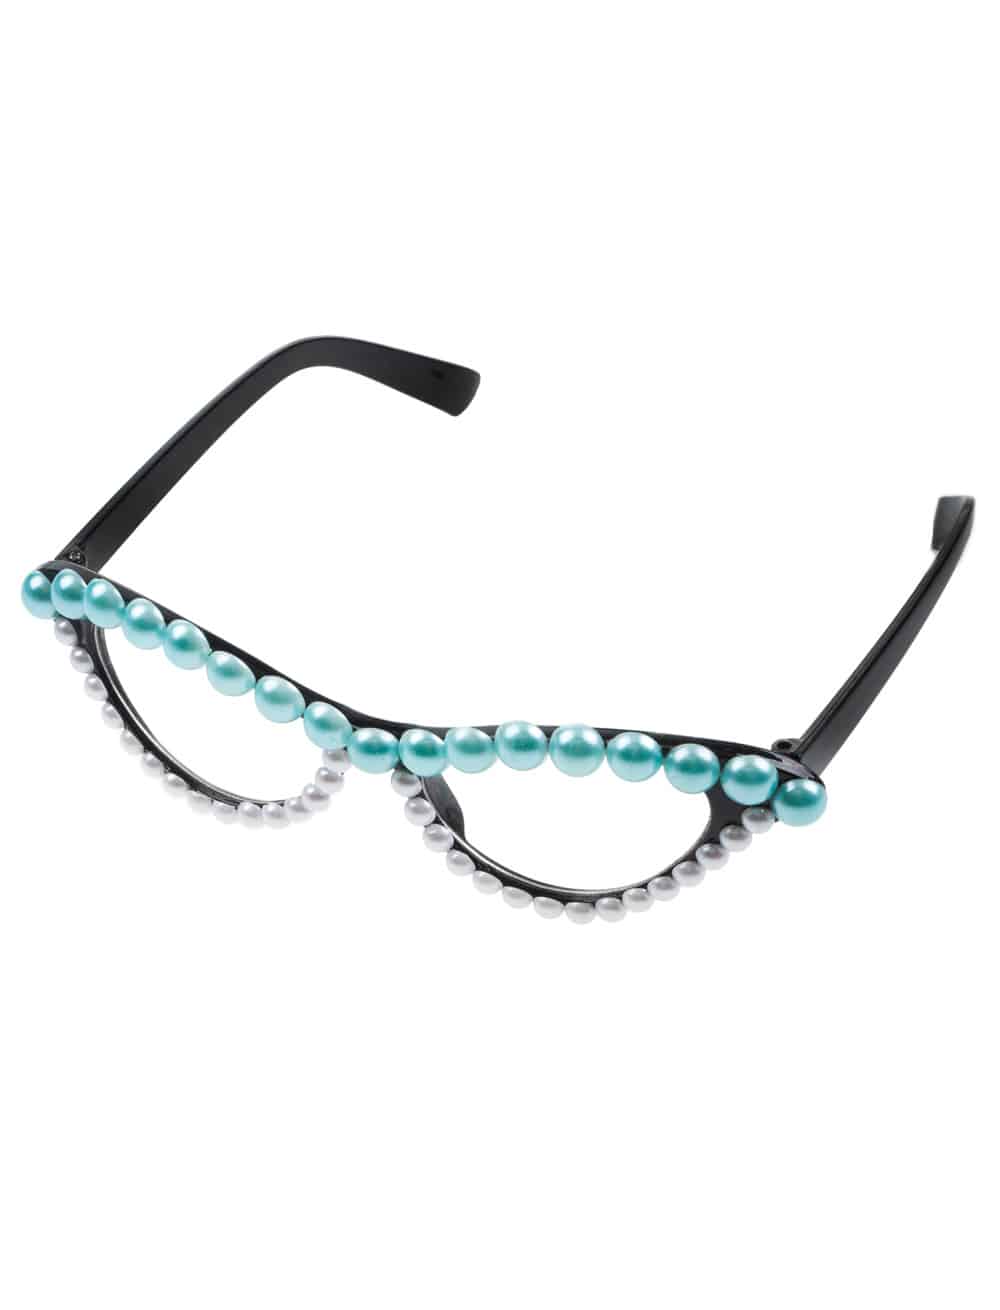 Brille mit Perlen türkis/weiß